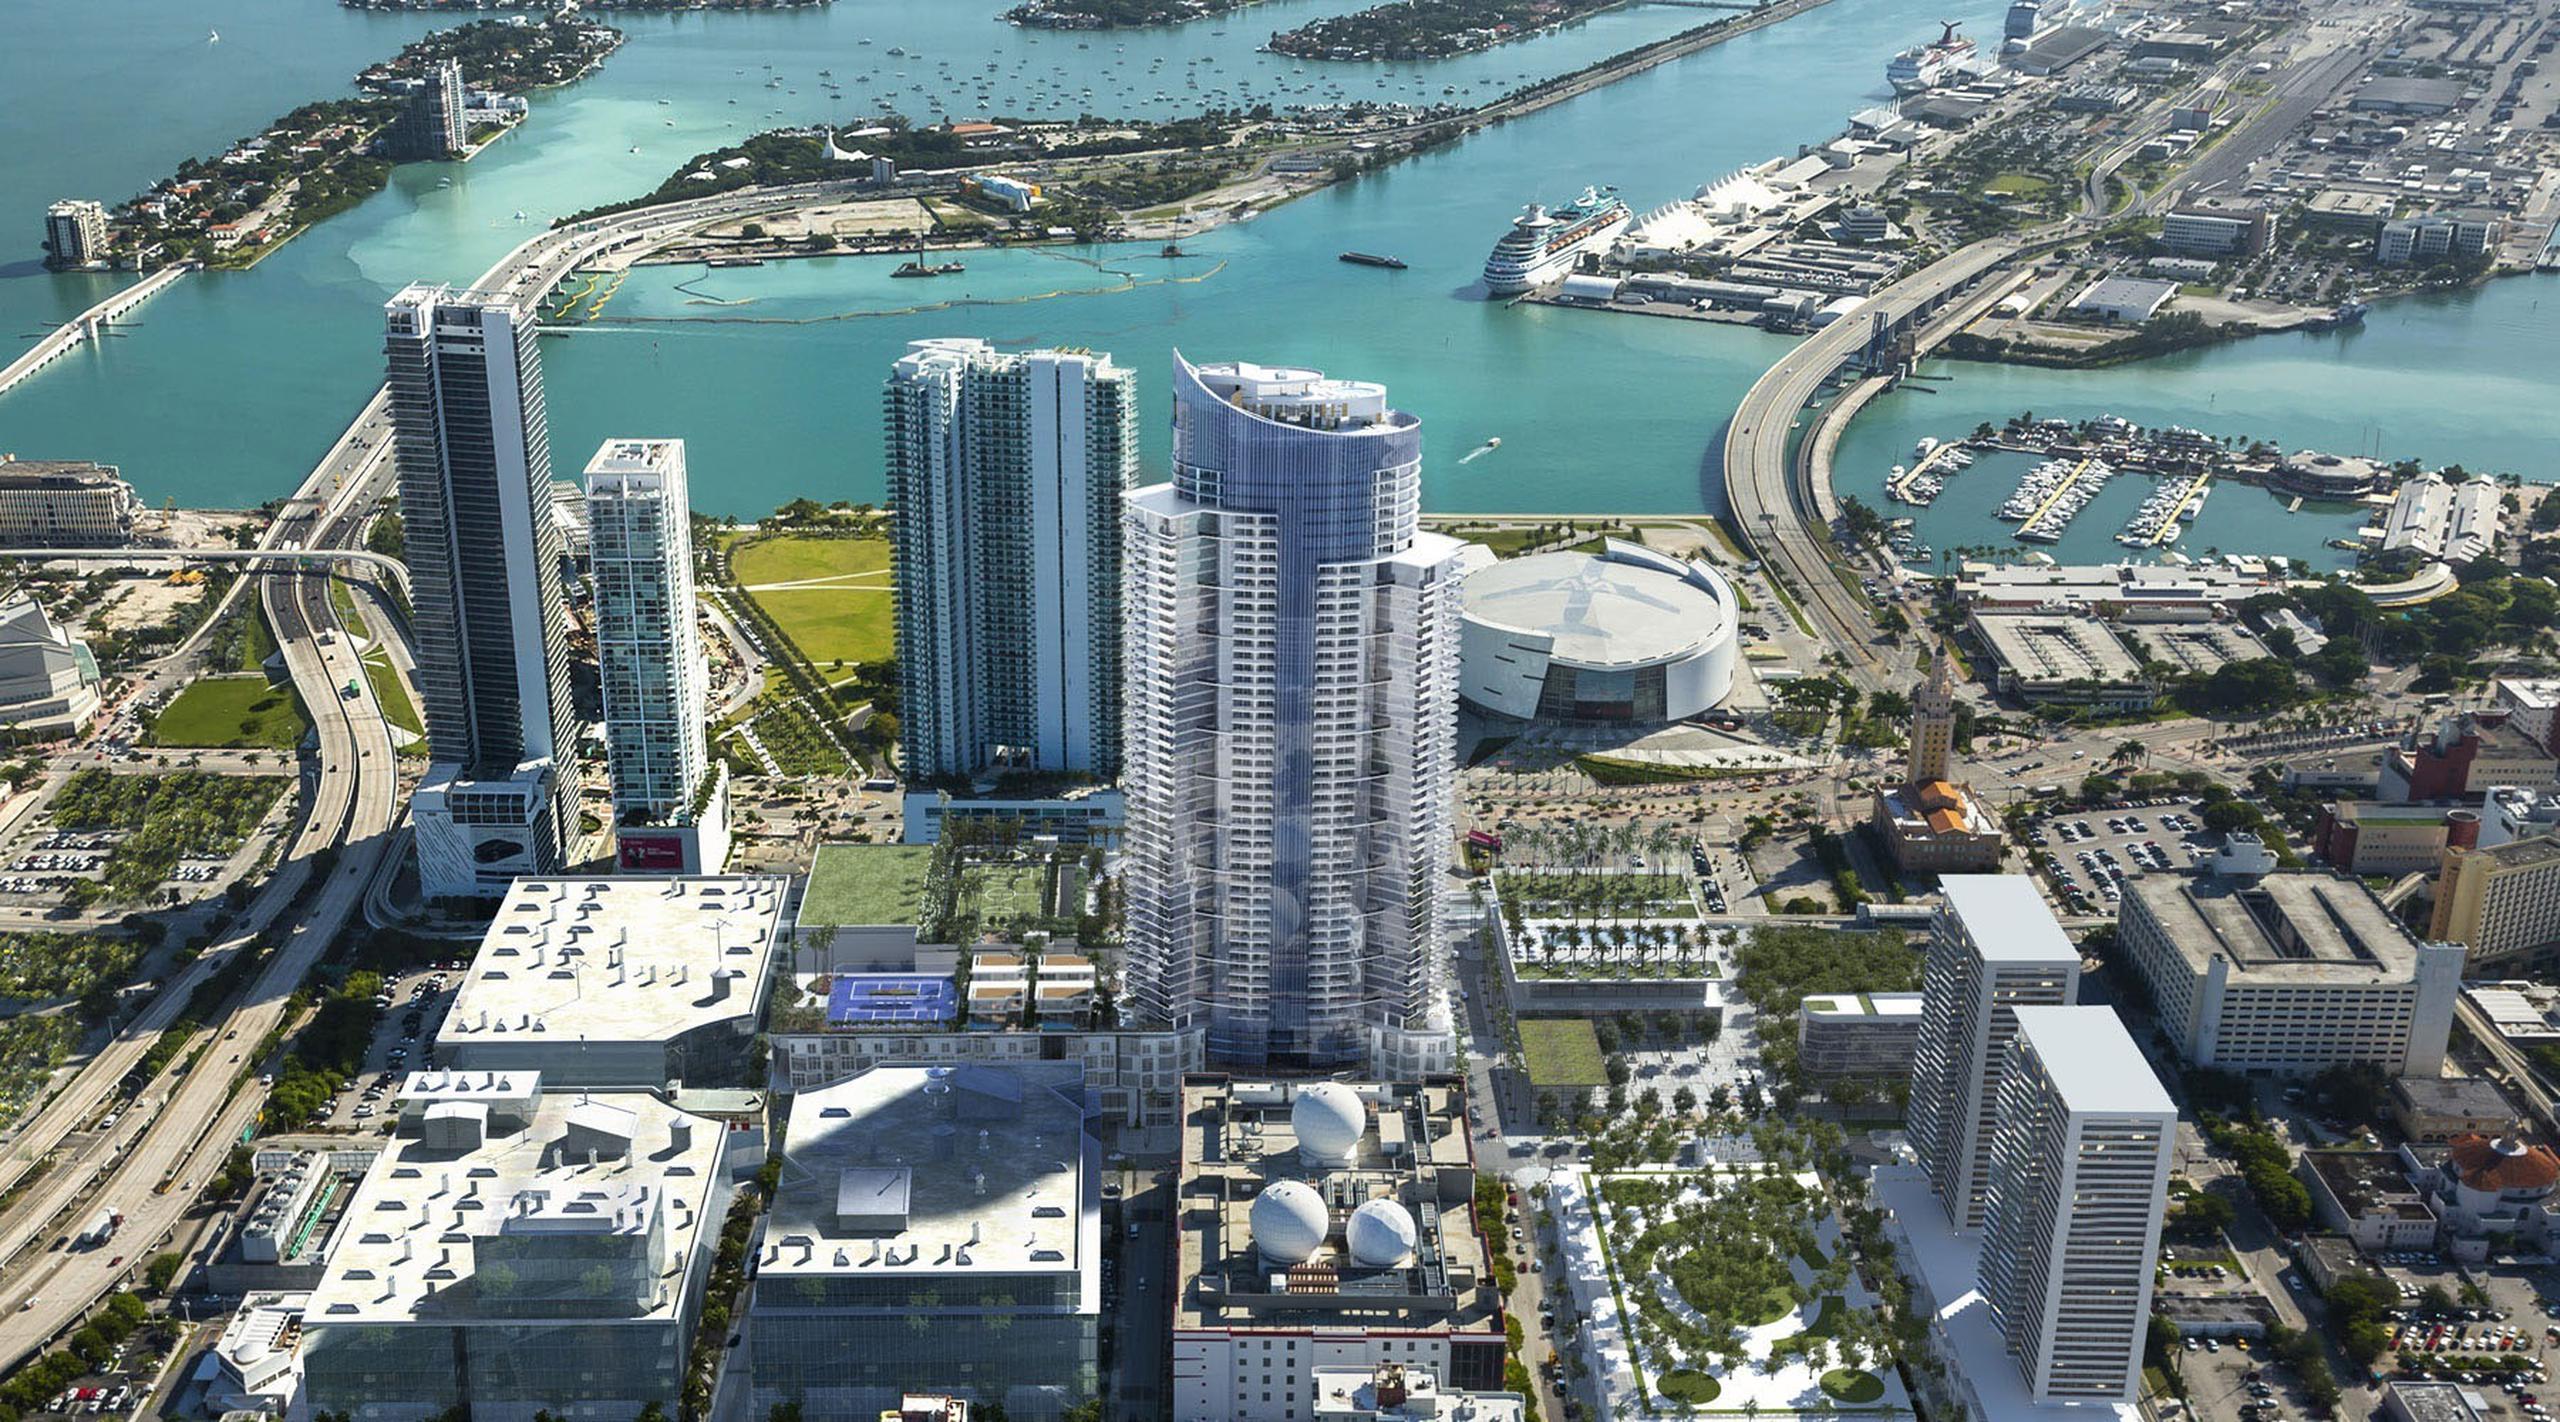 Fotografía cedida por Paramount Miami donde aparece su edificio Paramount Miami Worldcenter, en Miami.